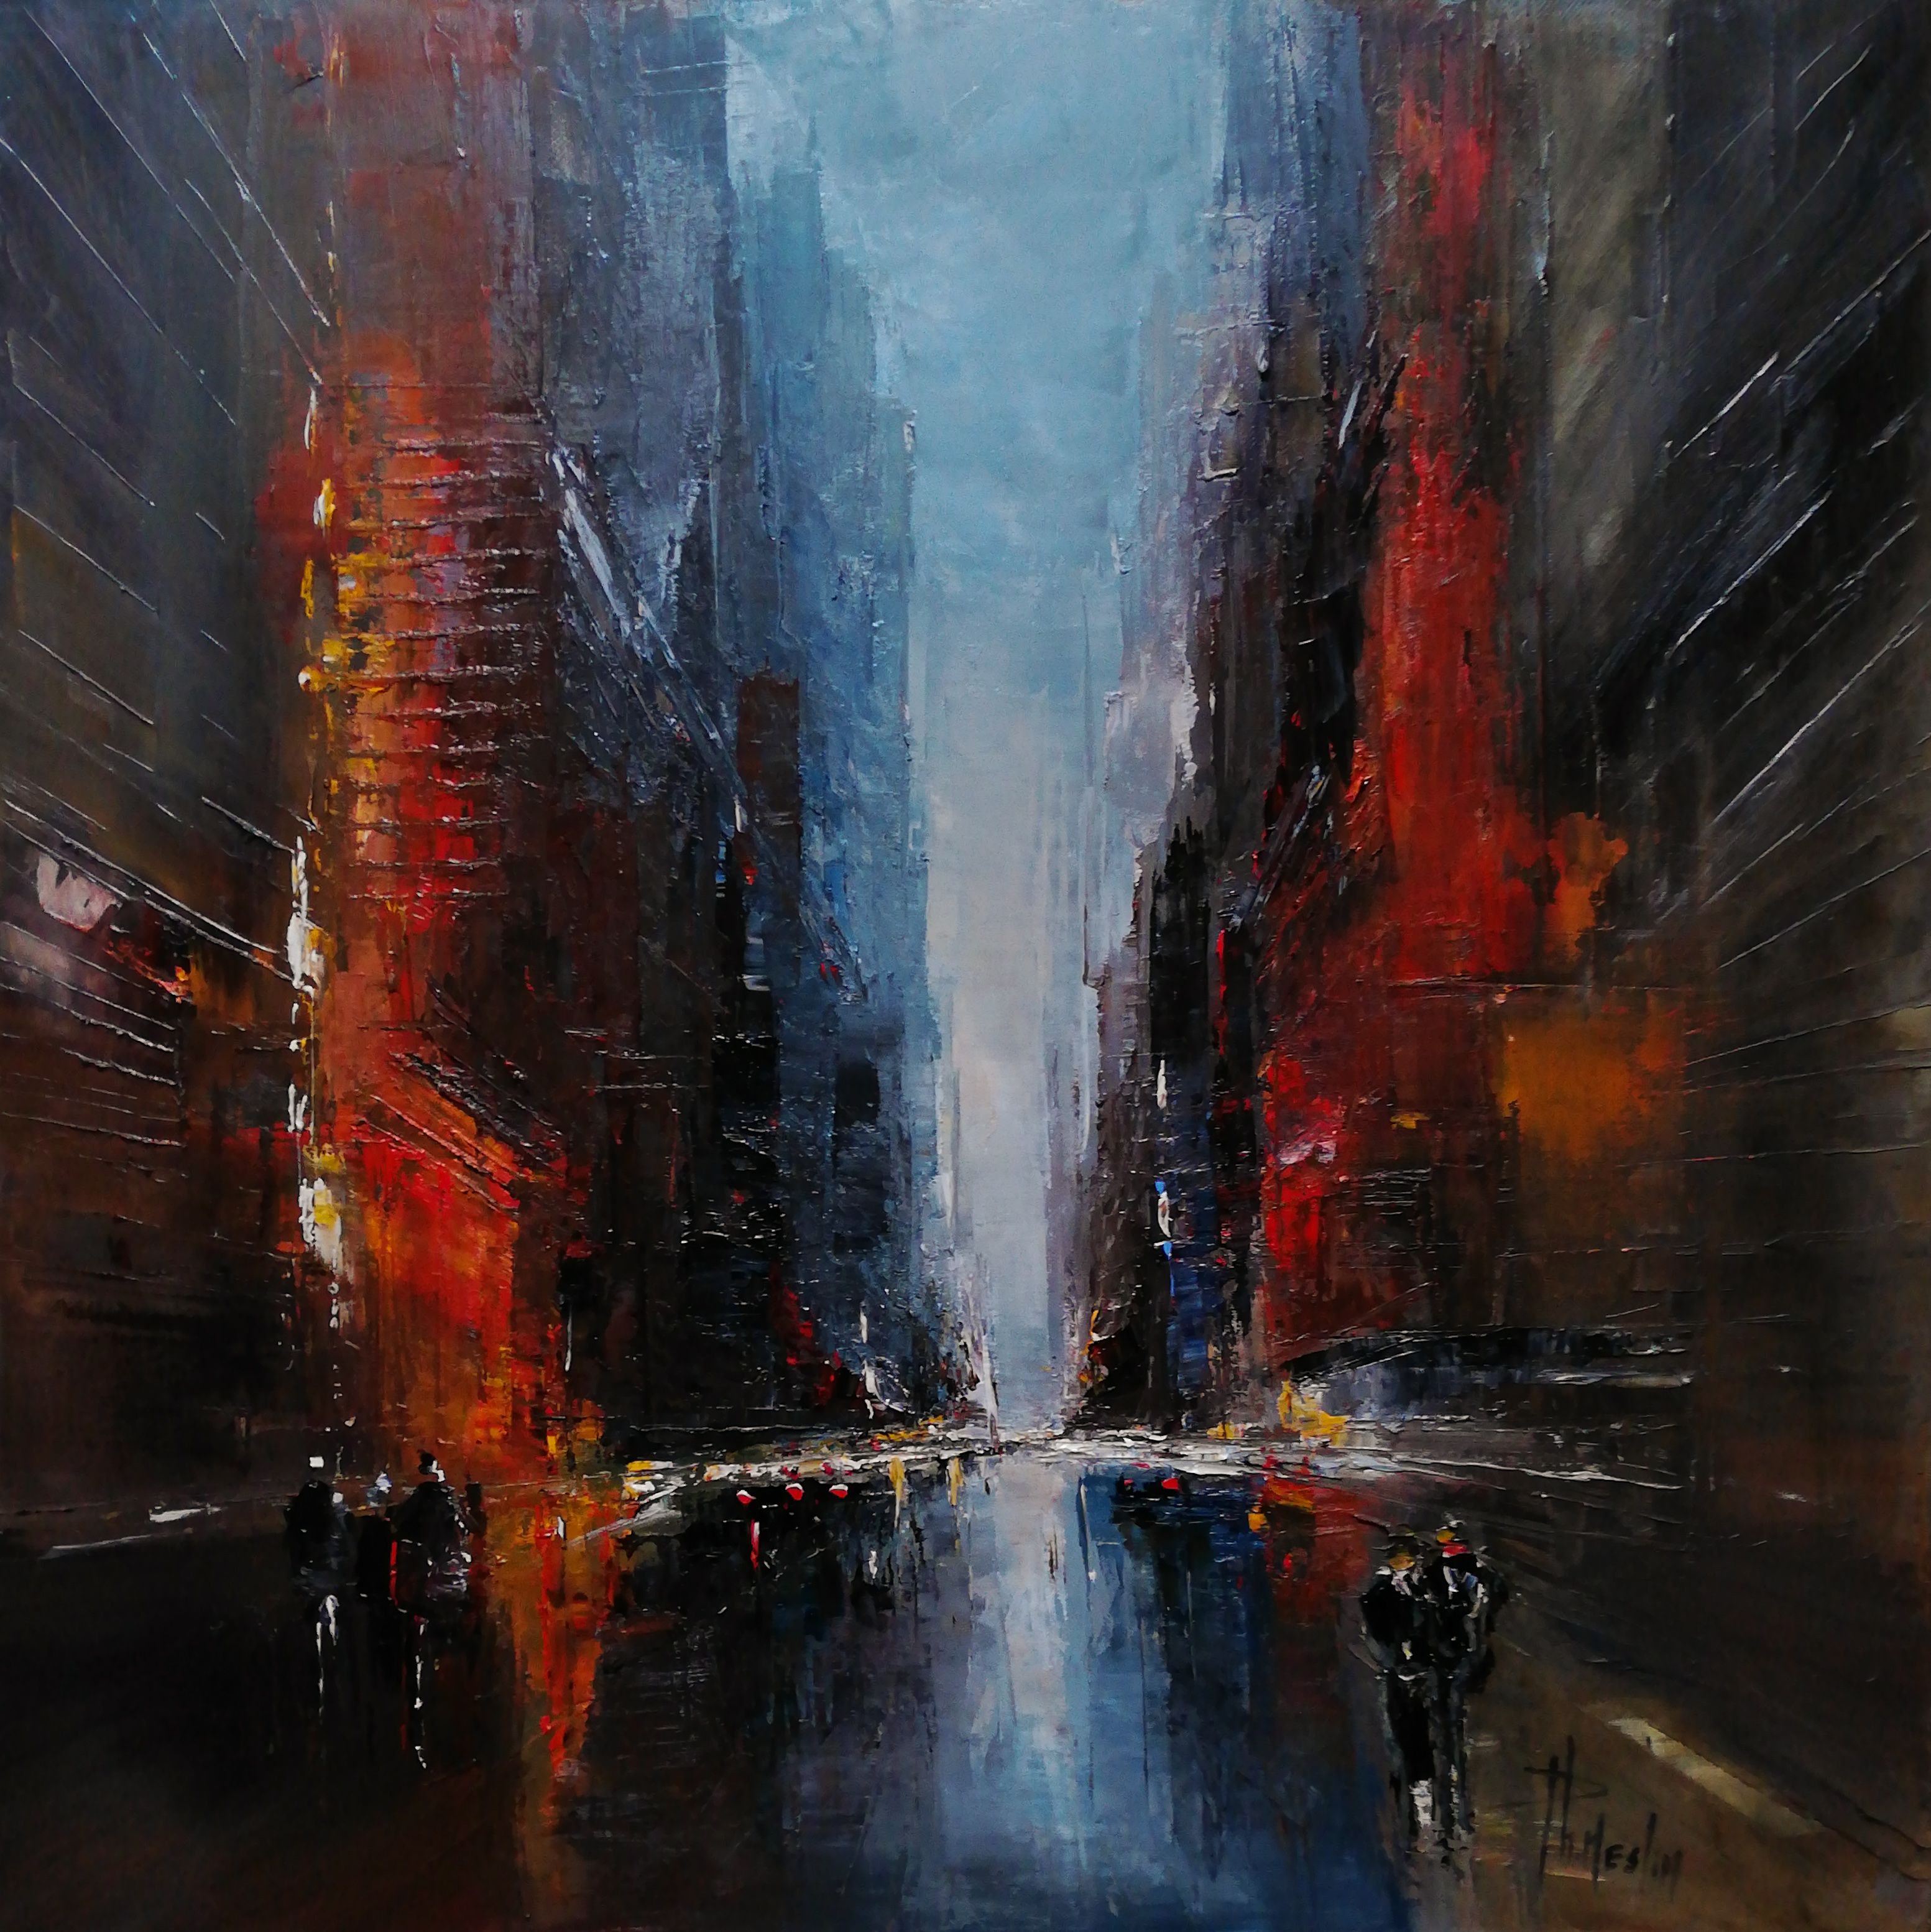 菲利普-梅斯林的 "曼哈顿交通Huile sur lin "油画，是一幅曼哈顿街景的具象彩色油画。